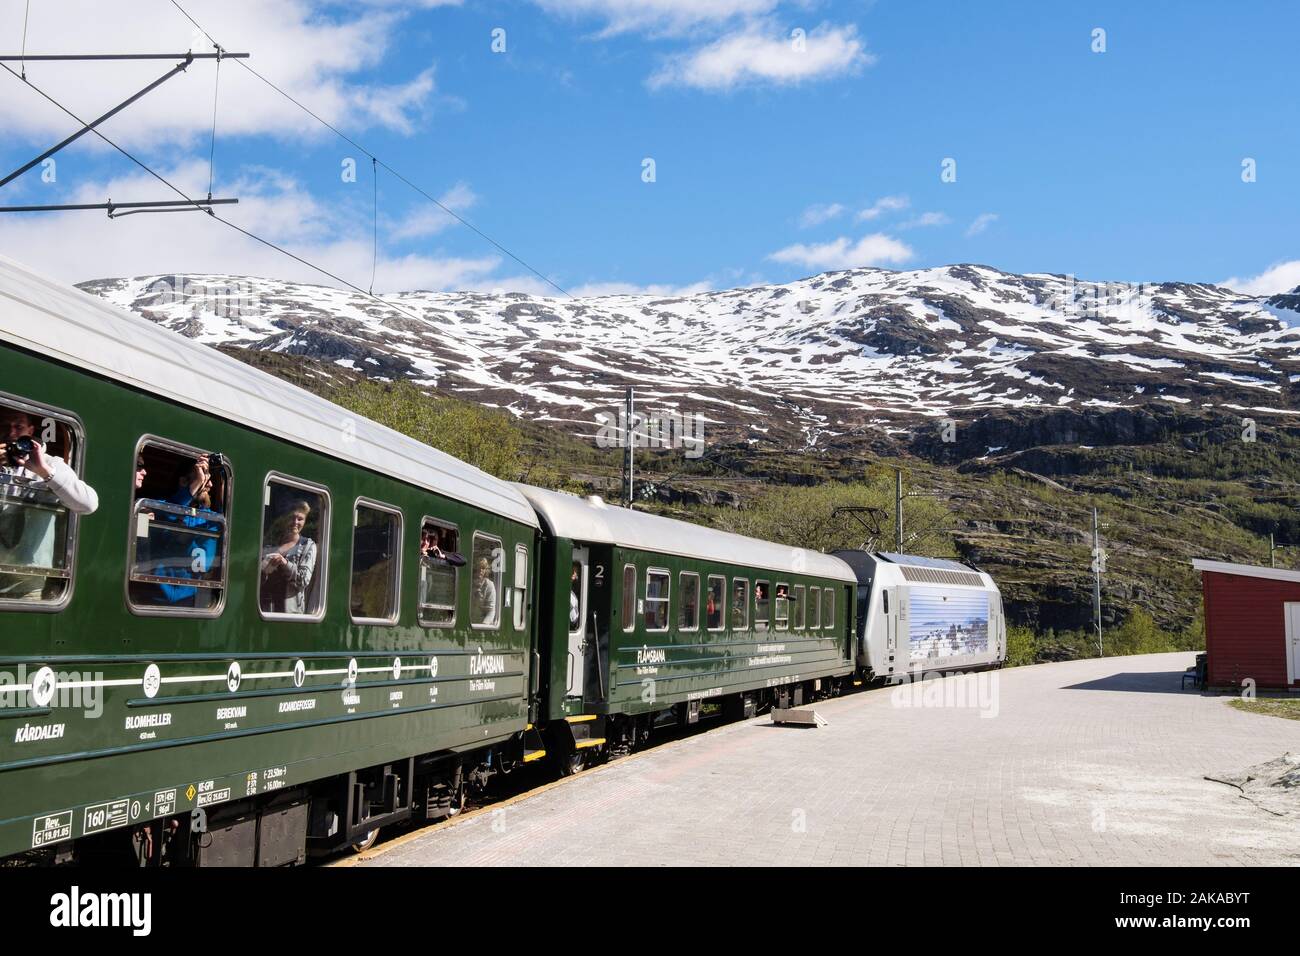 Voyager sur les chemins de fer touristiques Flam train par la plate-forme de la station avec vue panoramique de montagnes aux sommets enneigés. Vatnahelsen, Aurland, Norvège, Scandinavie Banque D'Images